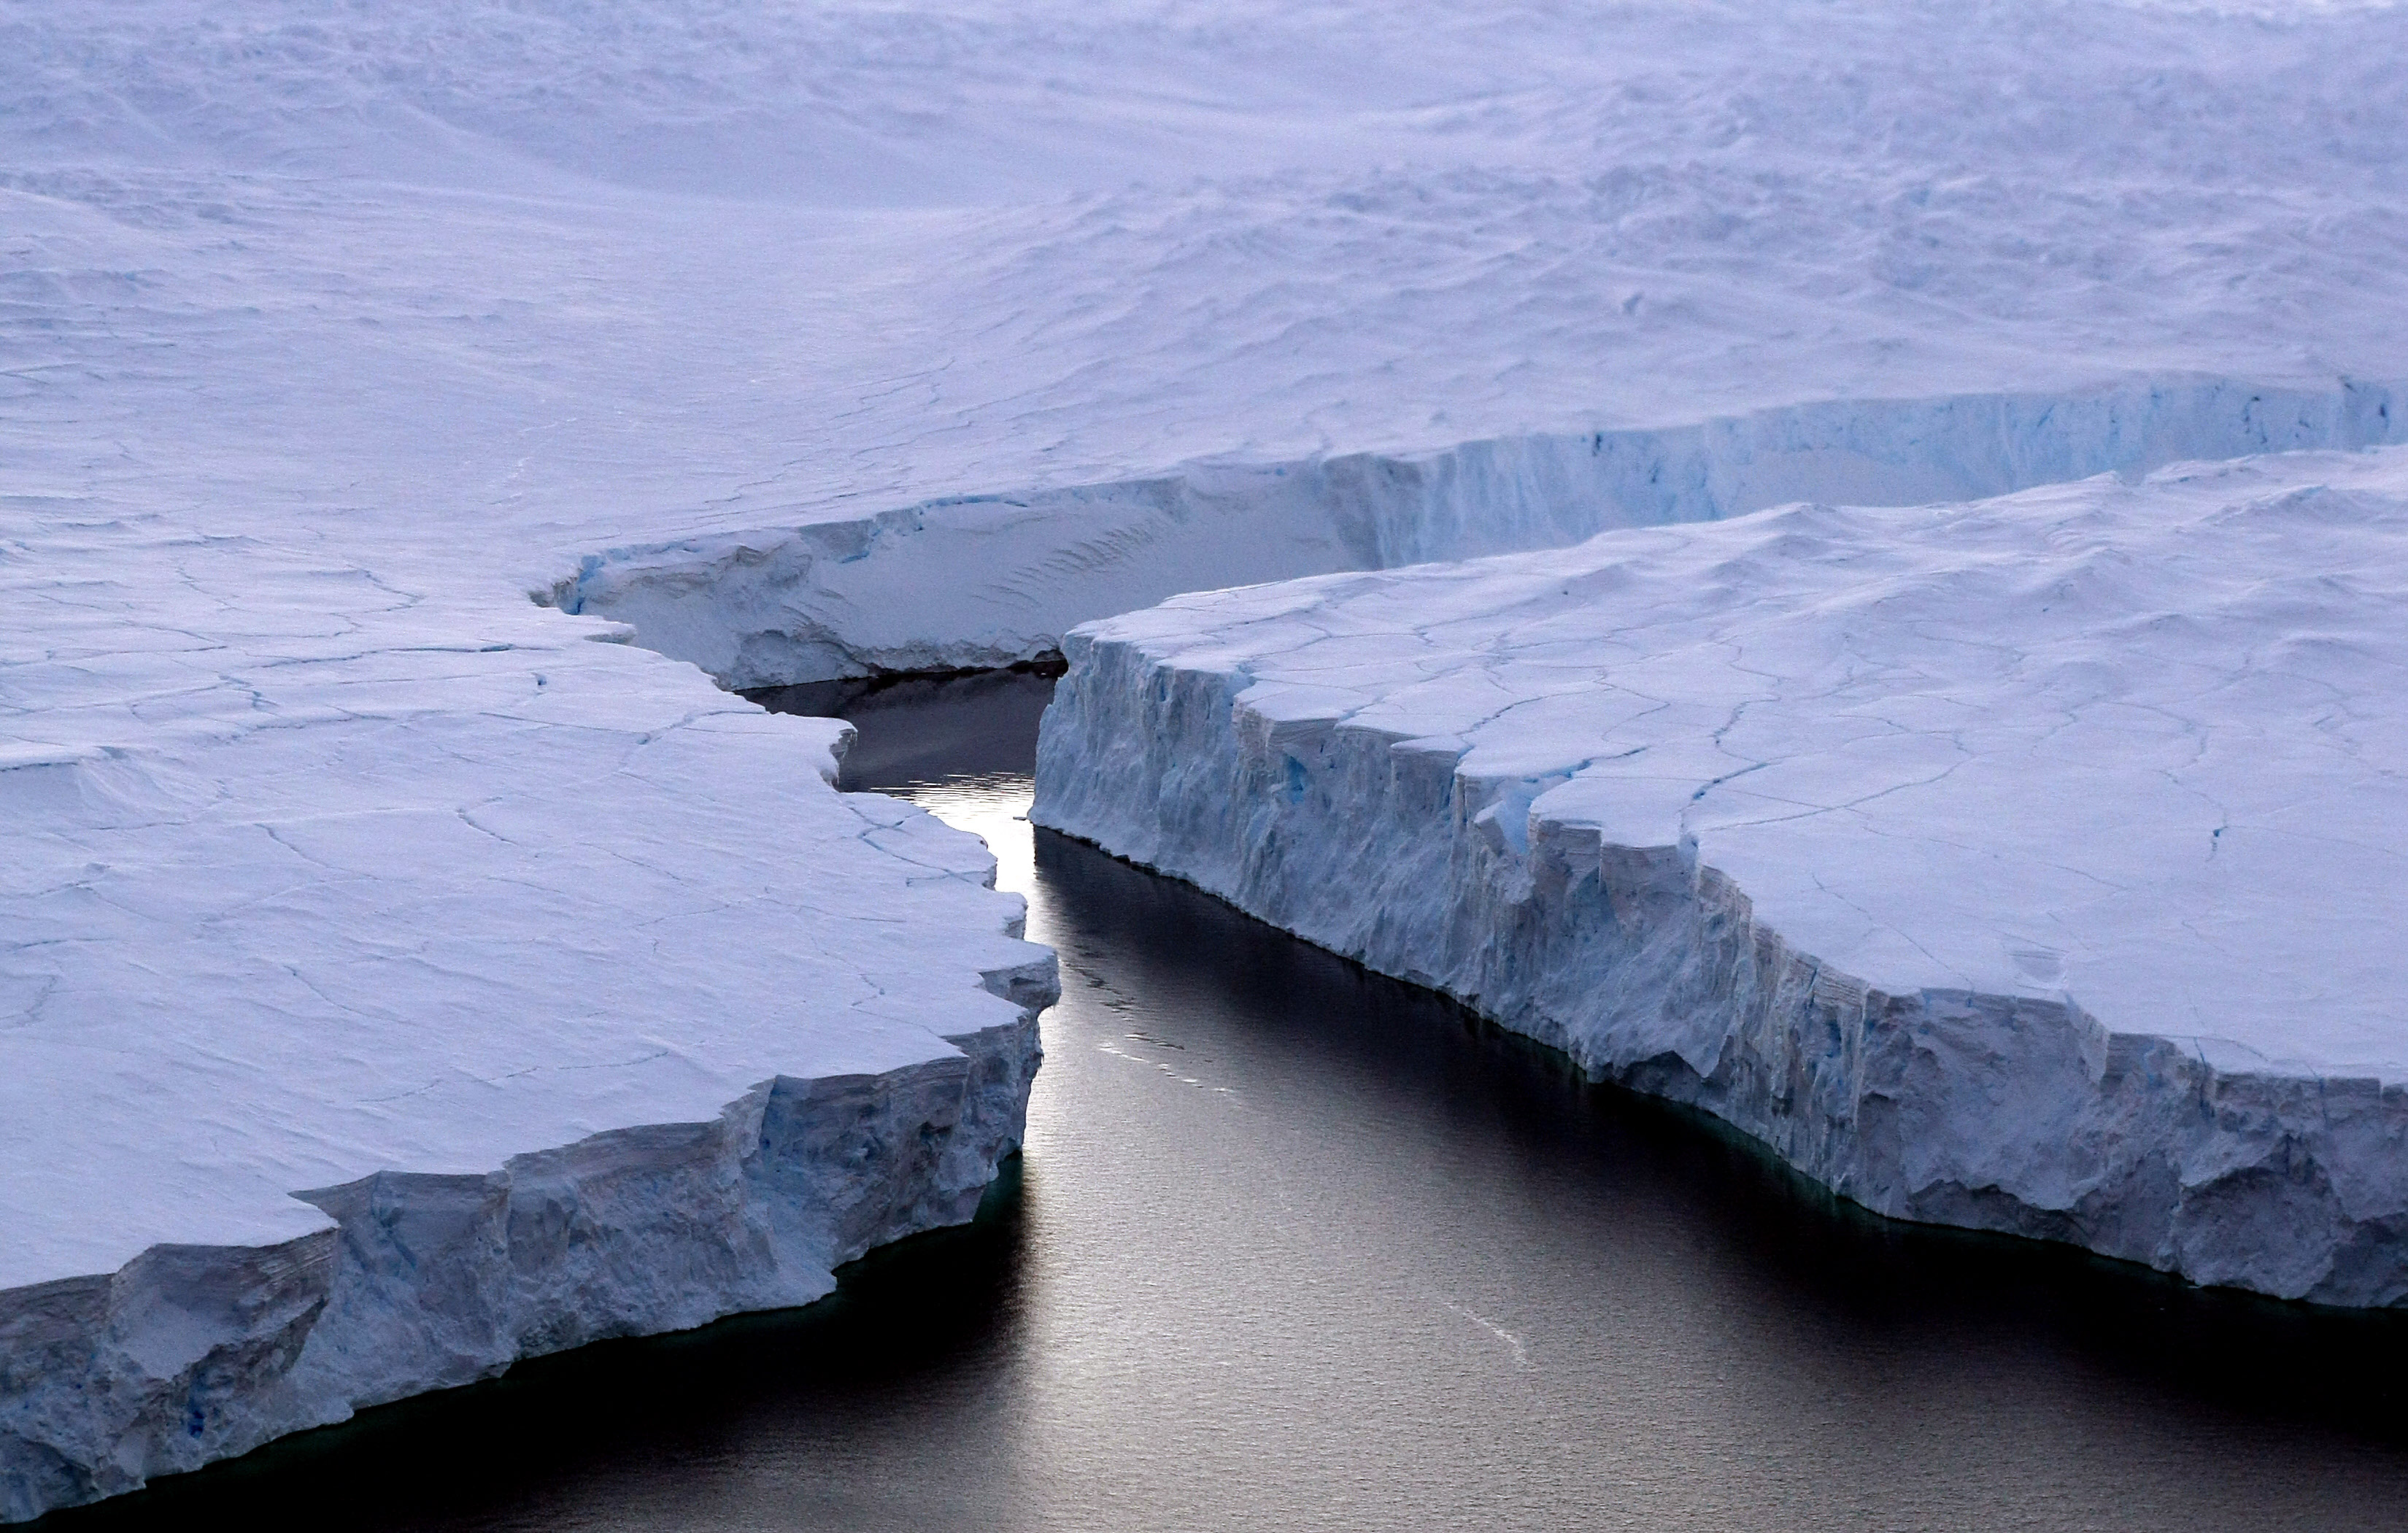 Costa Knox, Territorio Antártico Australiano: un enorme iceberg sufre una ruptura debido al calentamiento climático, según la ONU. (Crédito: TORSTEN BLACKWOOD/AFP/Getty Images)